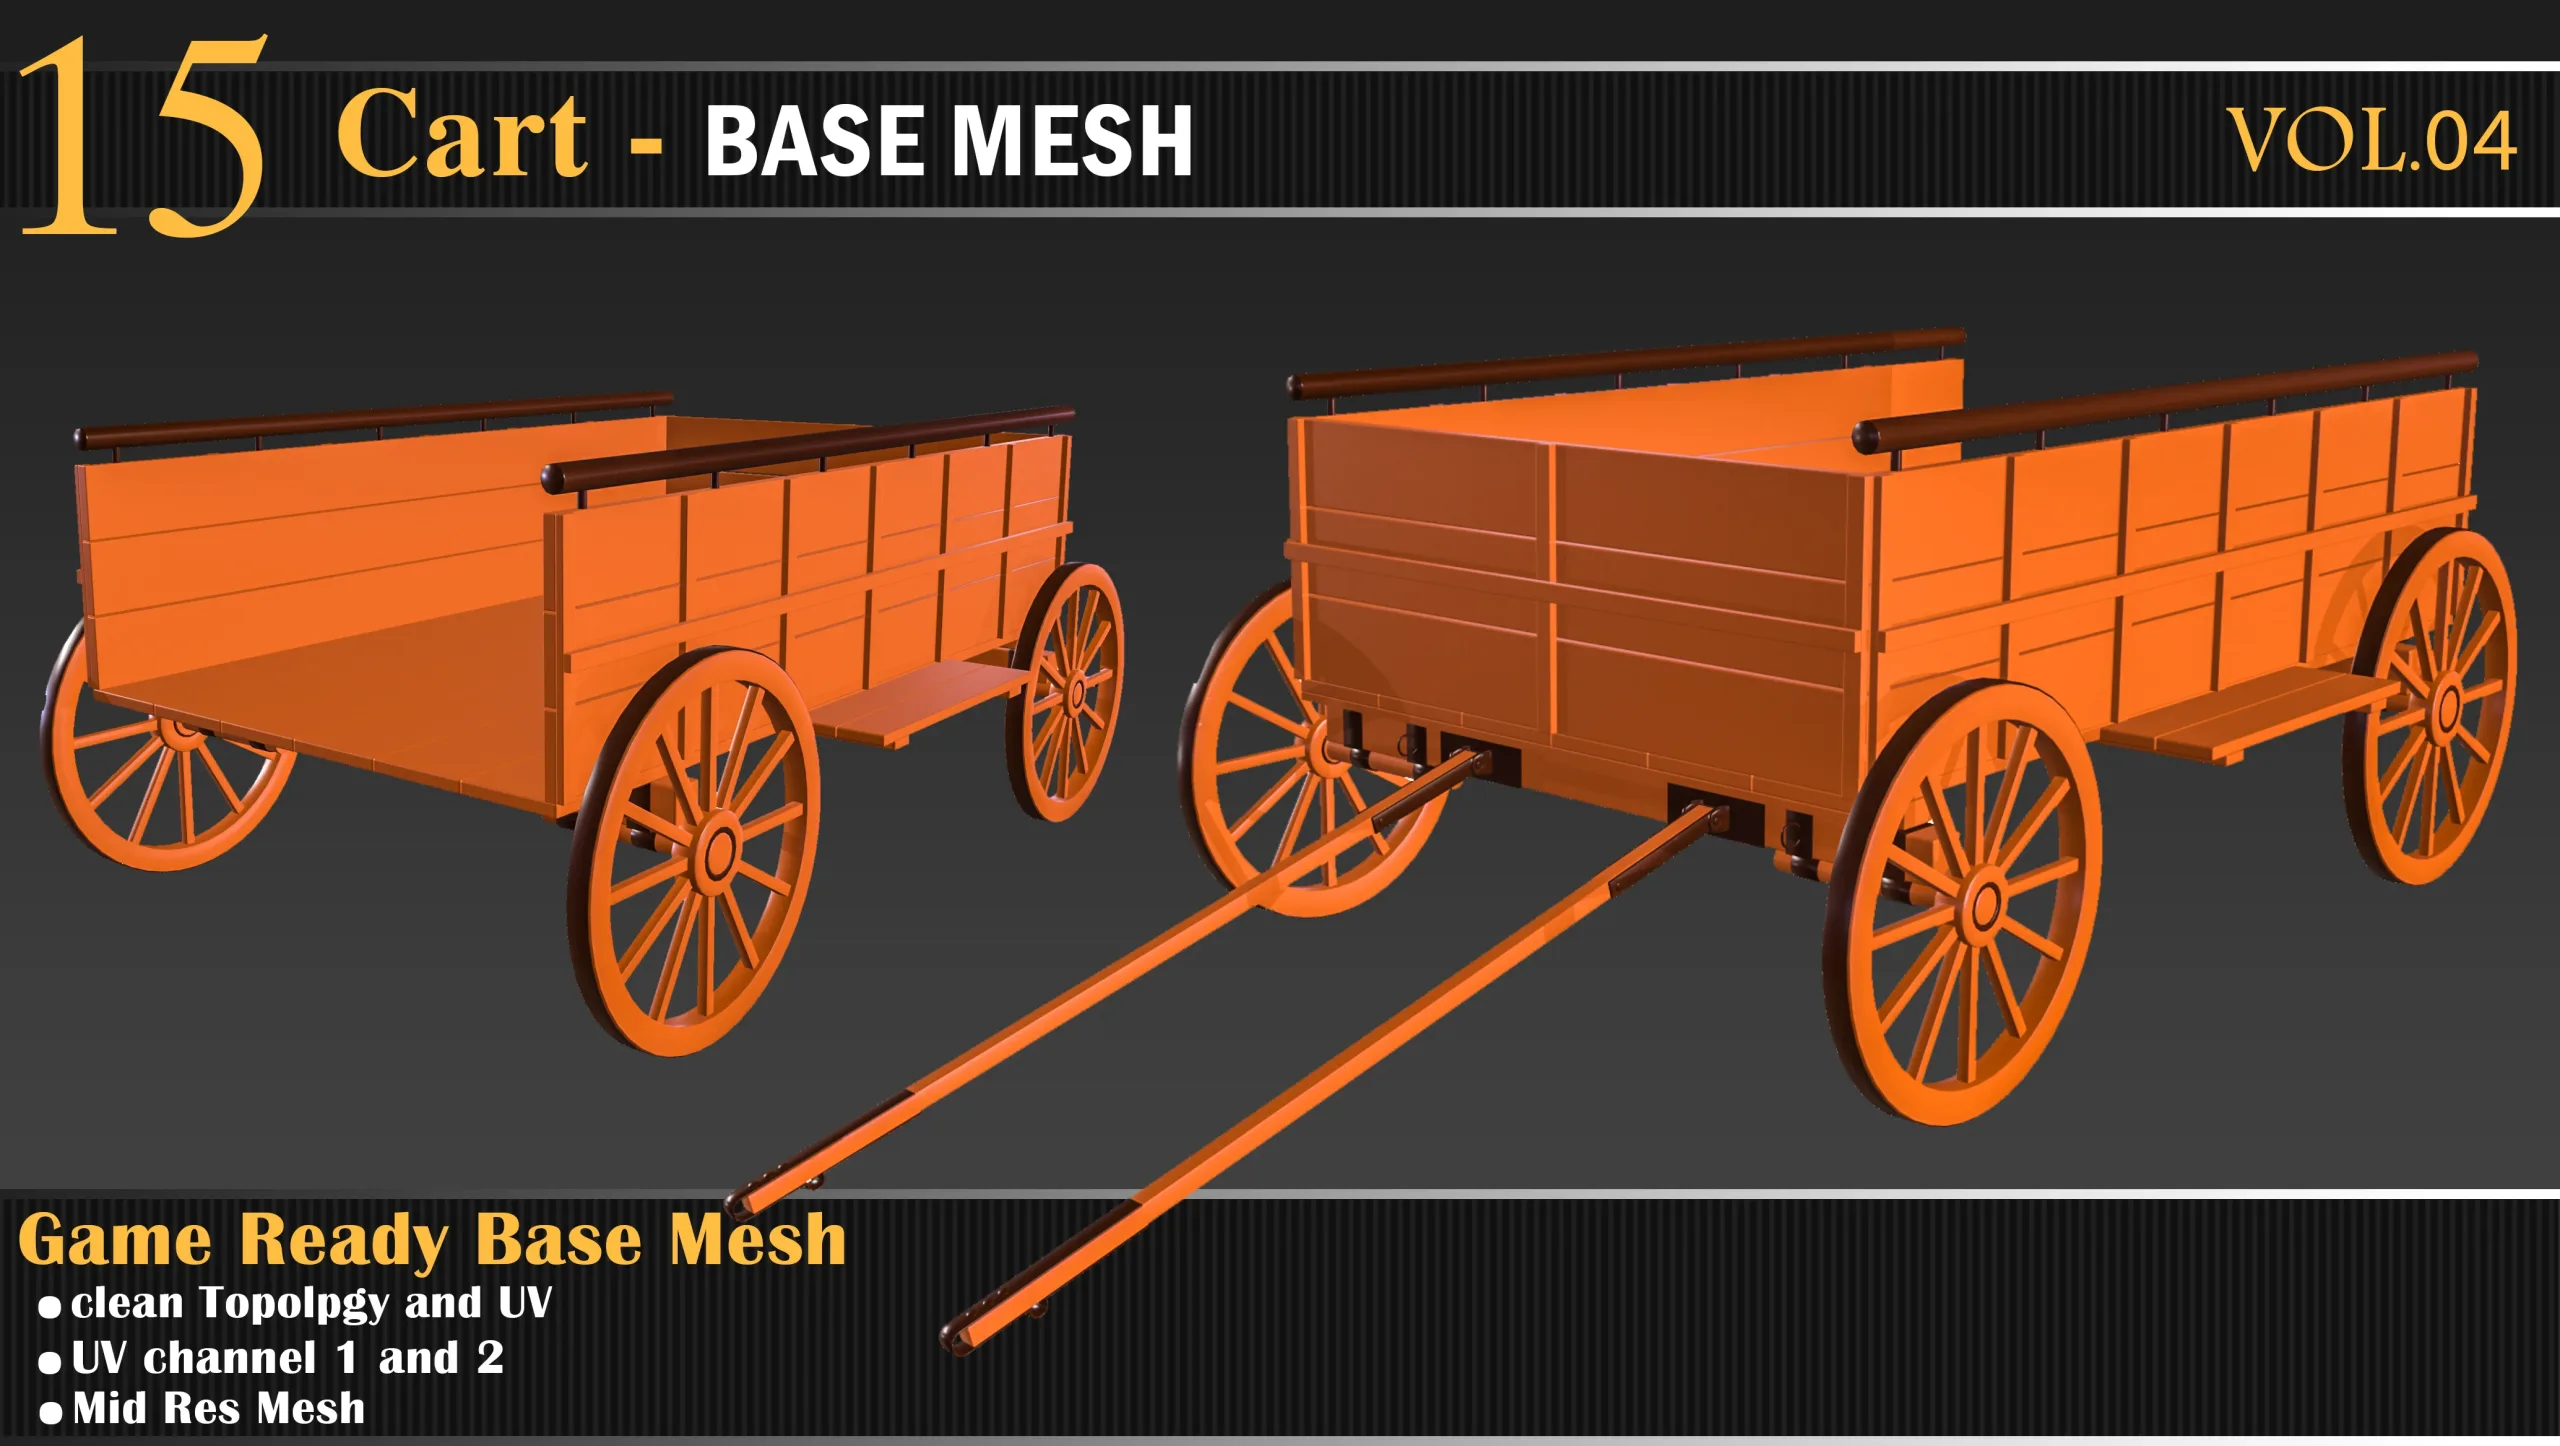 15 Cart & chariot bash mesh